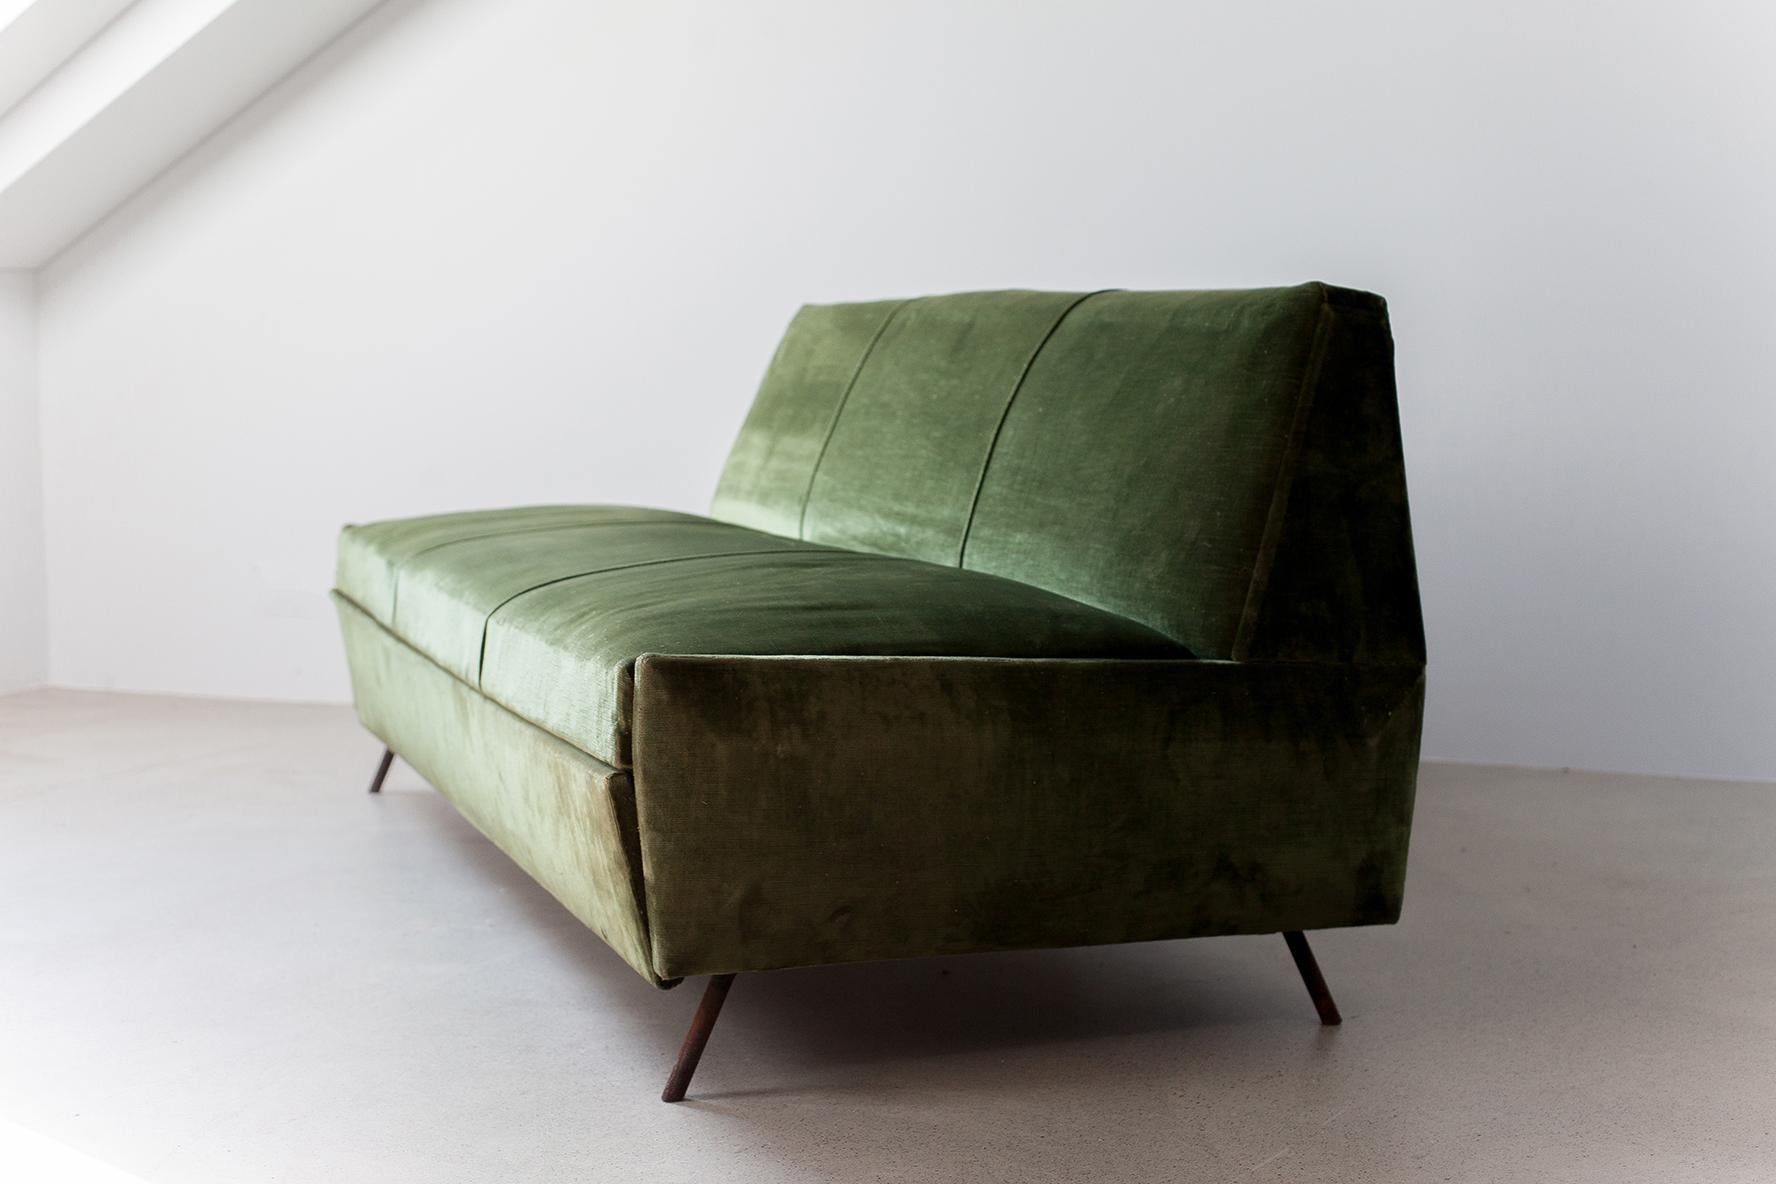 Magnifique canapé-lit / lit de jour vintage conçu par Marco Zanuso pour Arflex Italie dans les années 1950. Modèle Leg-o-Matic version avec 2 pieds au lieu de 3. Le canapé est recouvert de velours vert vintage. Vous pouvez envisager de le retapisser